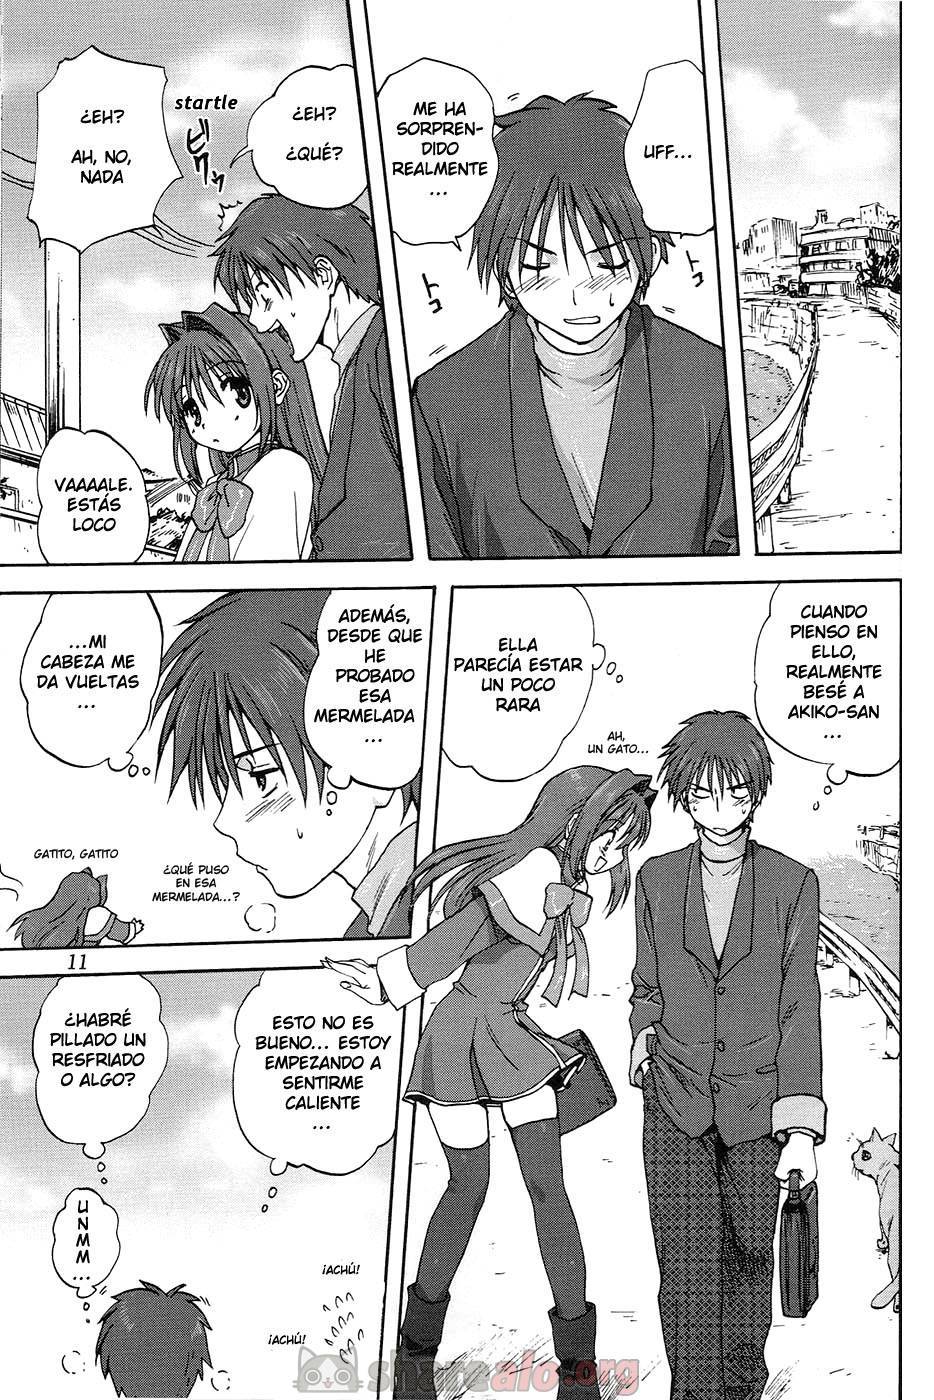 Akiko-san to Issho (Kanon XXX) - 12 - Comics Porno - Hentai Manga - Cartoon XXX